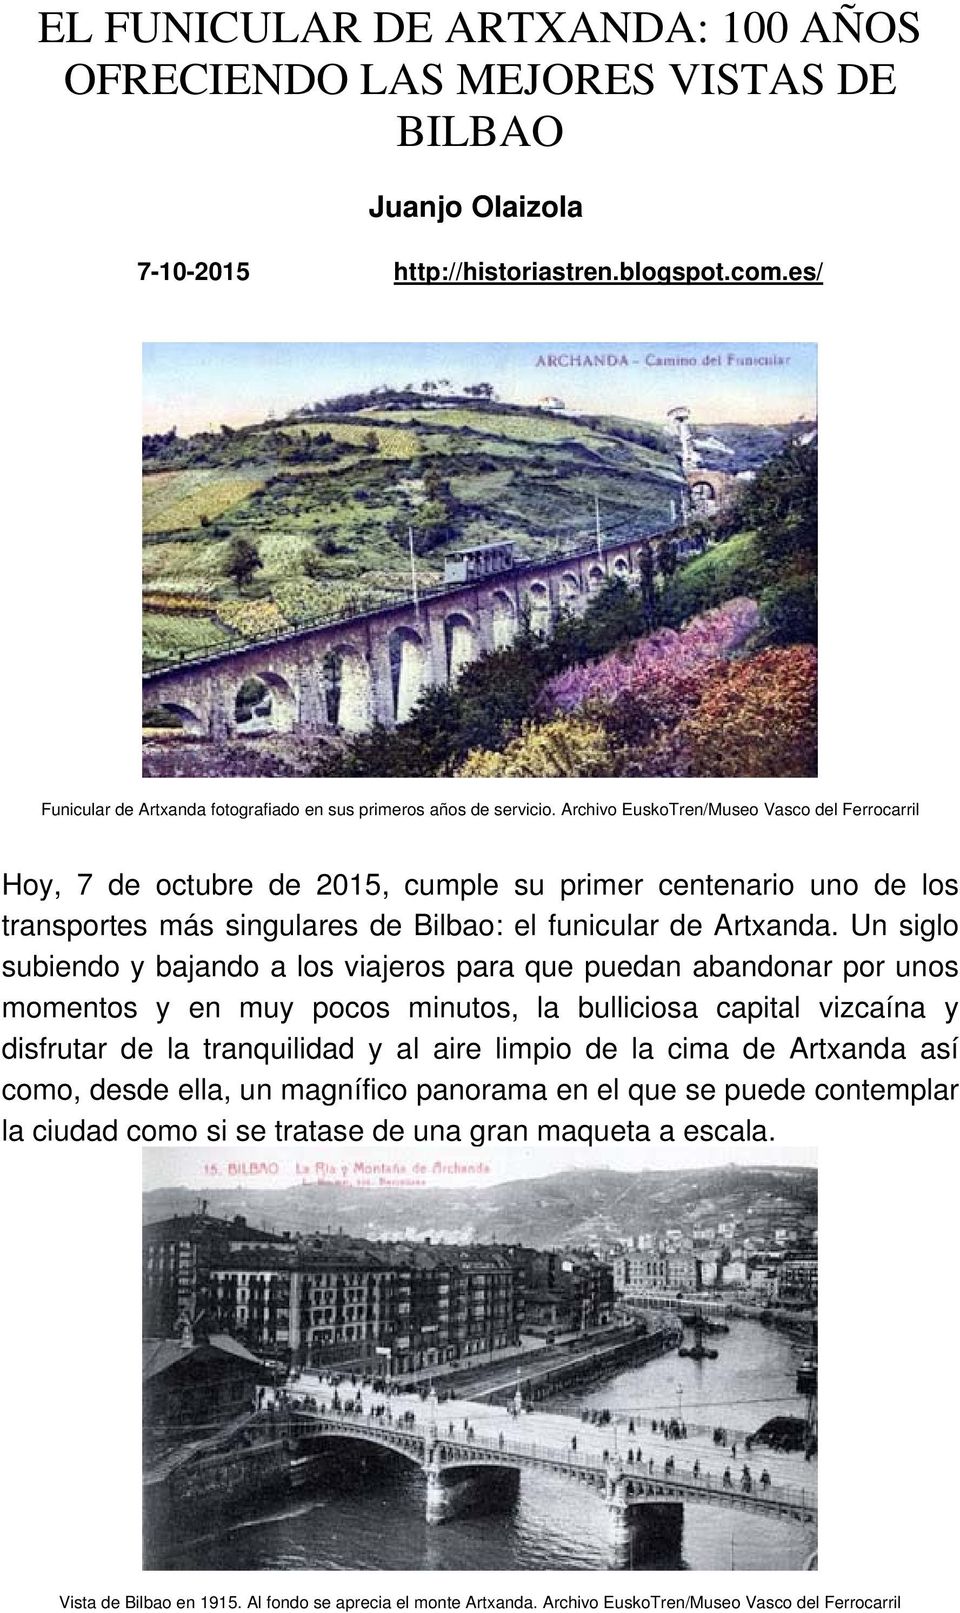 Archivo EuskoTren/Museo Vasco del Ferrocarril Hoy, 7 de octubre de 2015, cumple su primer centenario uno de los transportes más singulares de Bilbao: el funicular de Artxanda.